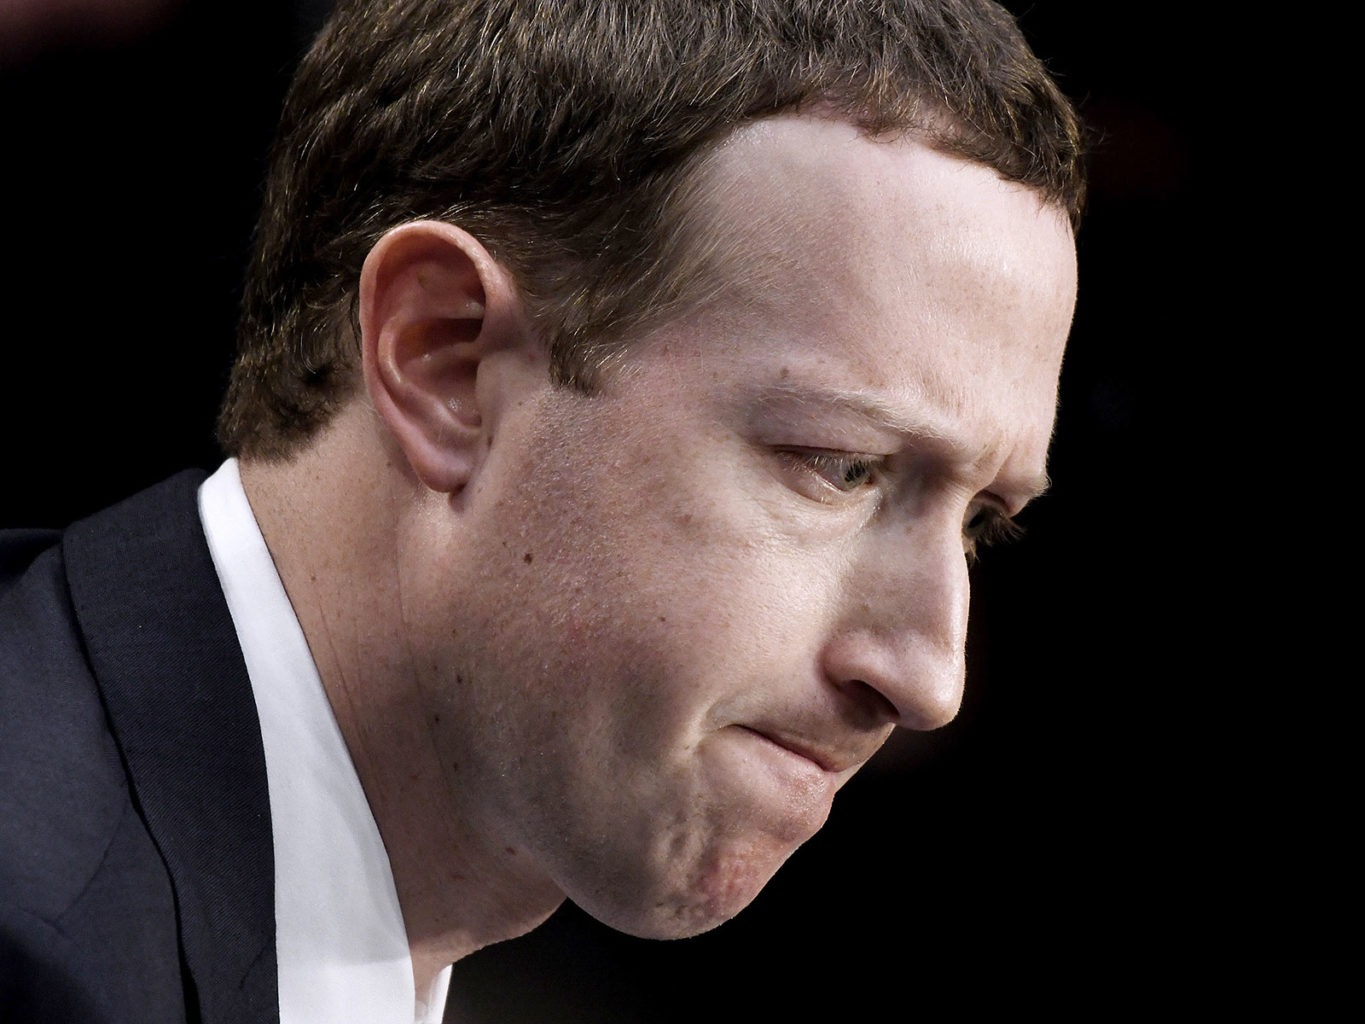 Mark Zuckerberg property value plummets as Facebook, WhatsApp down